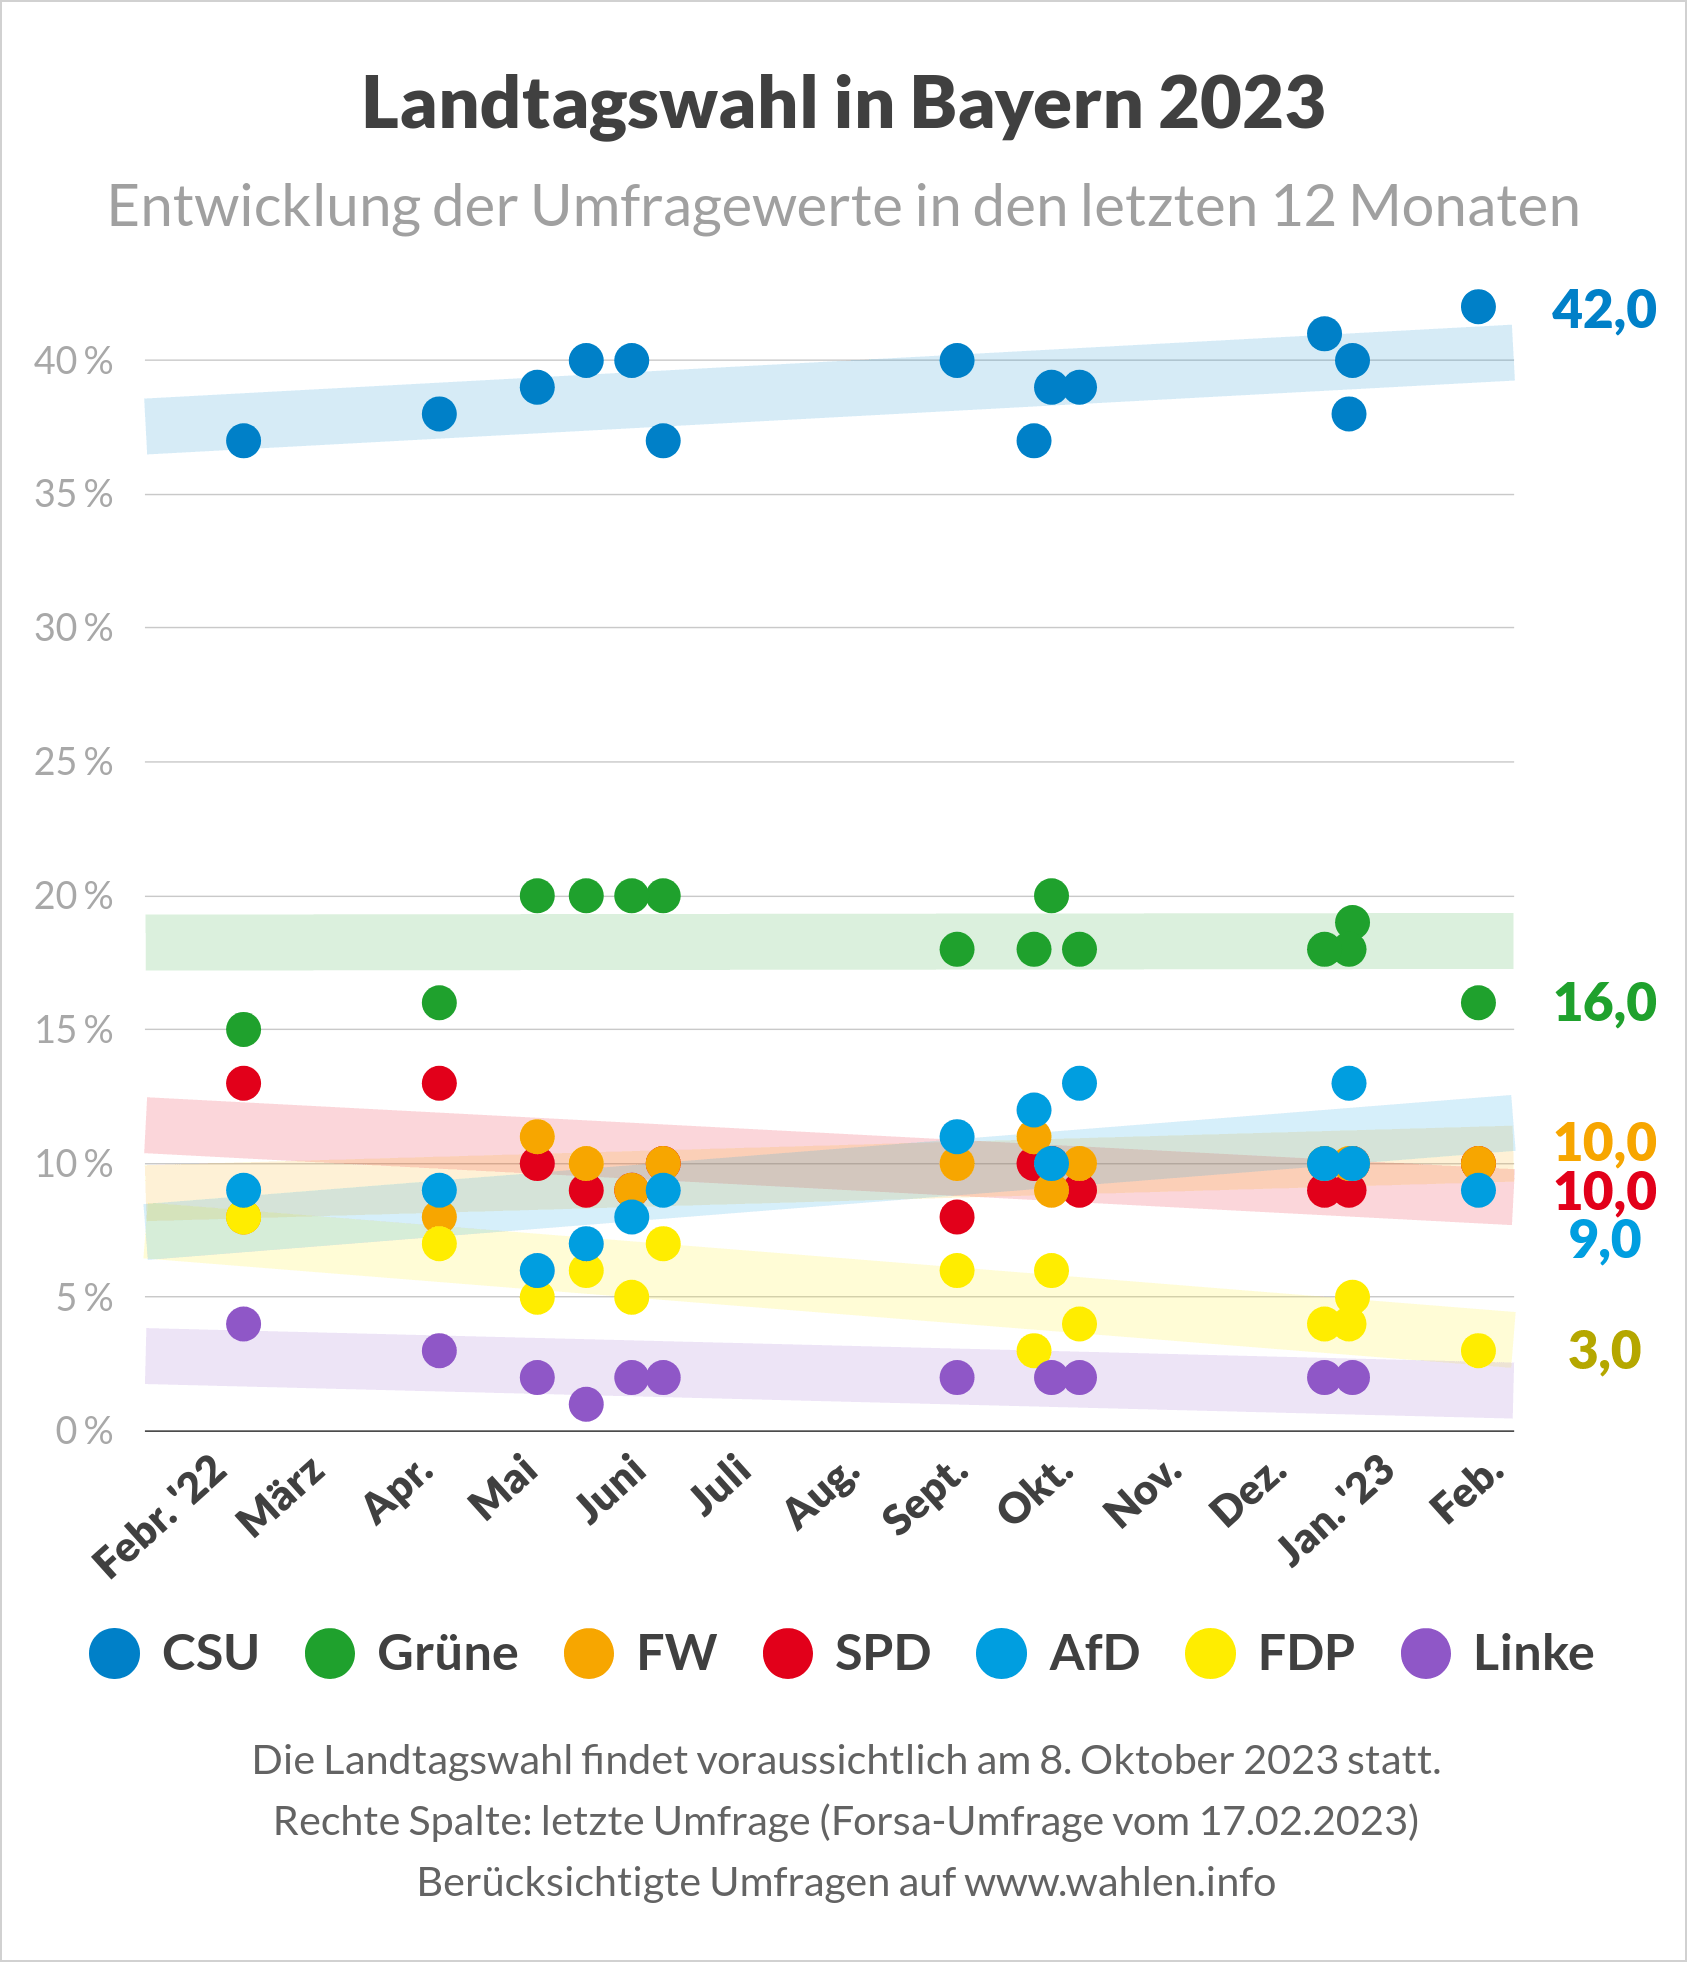 Landtagswahl 2023 in Bayern - Umfragen (Entwicklung der Umfragewerte)